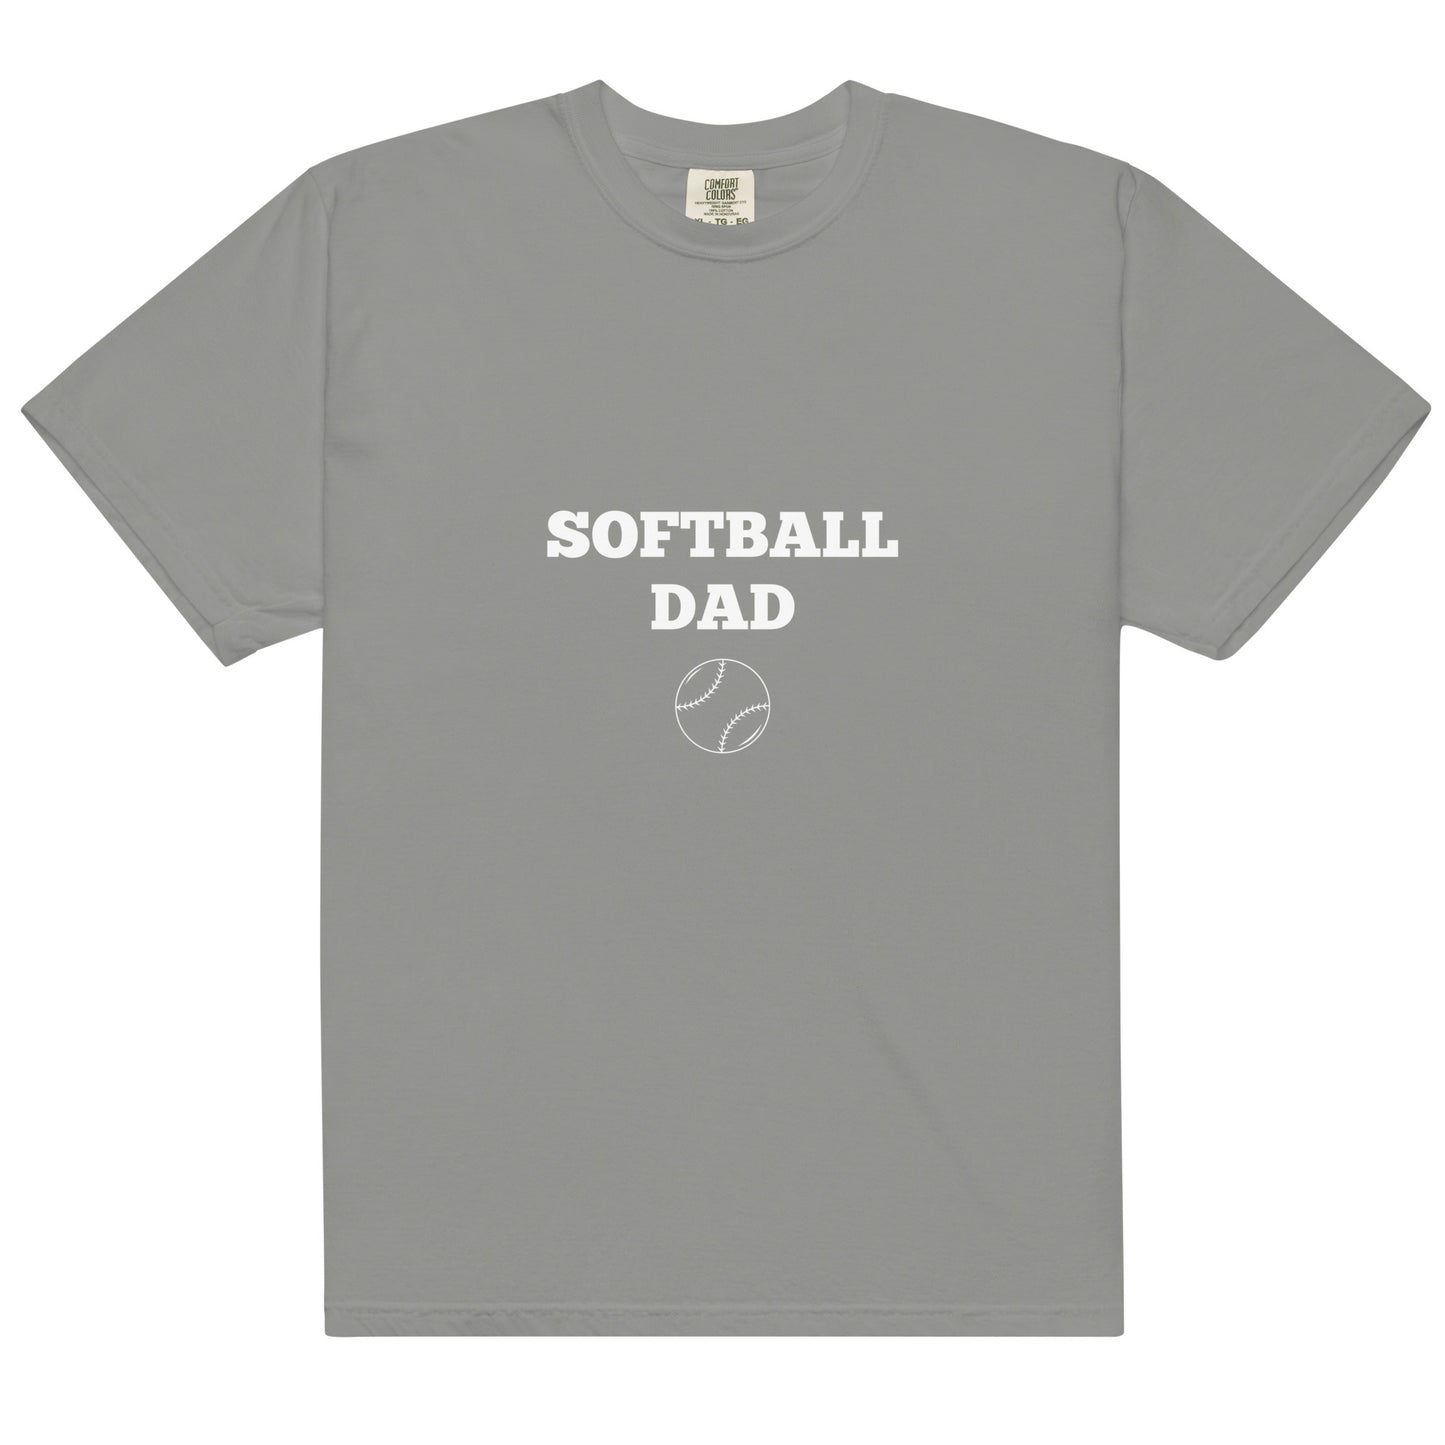 Softball Dad Printed Tshirt